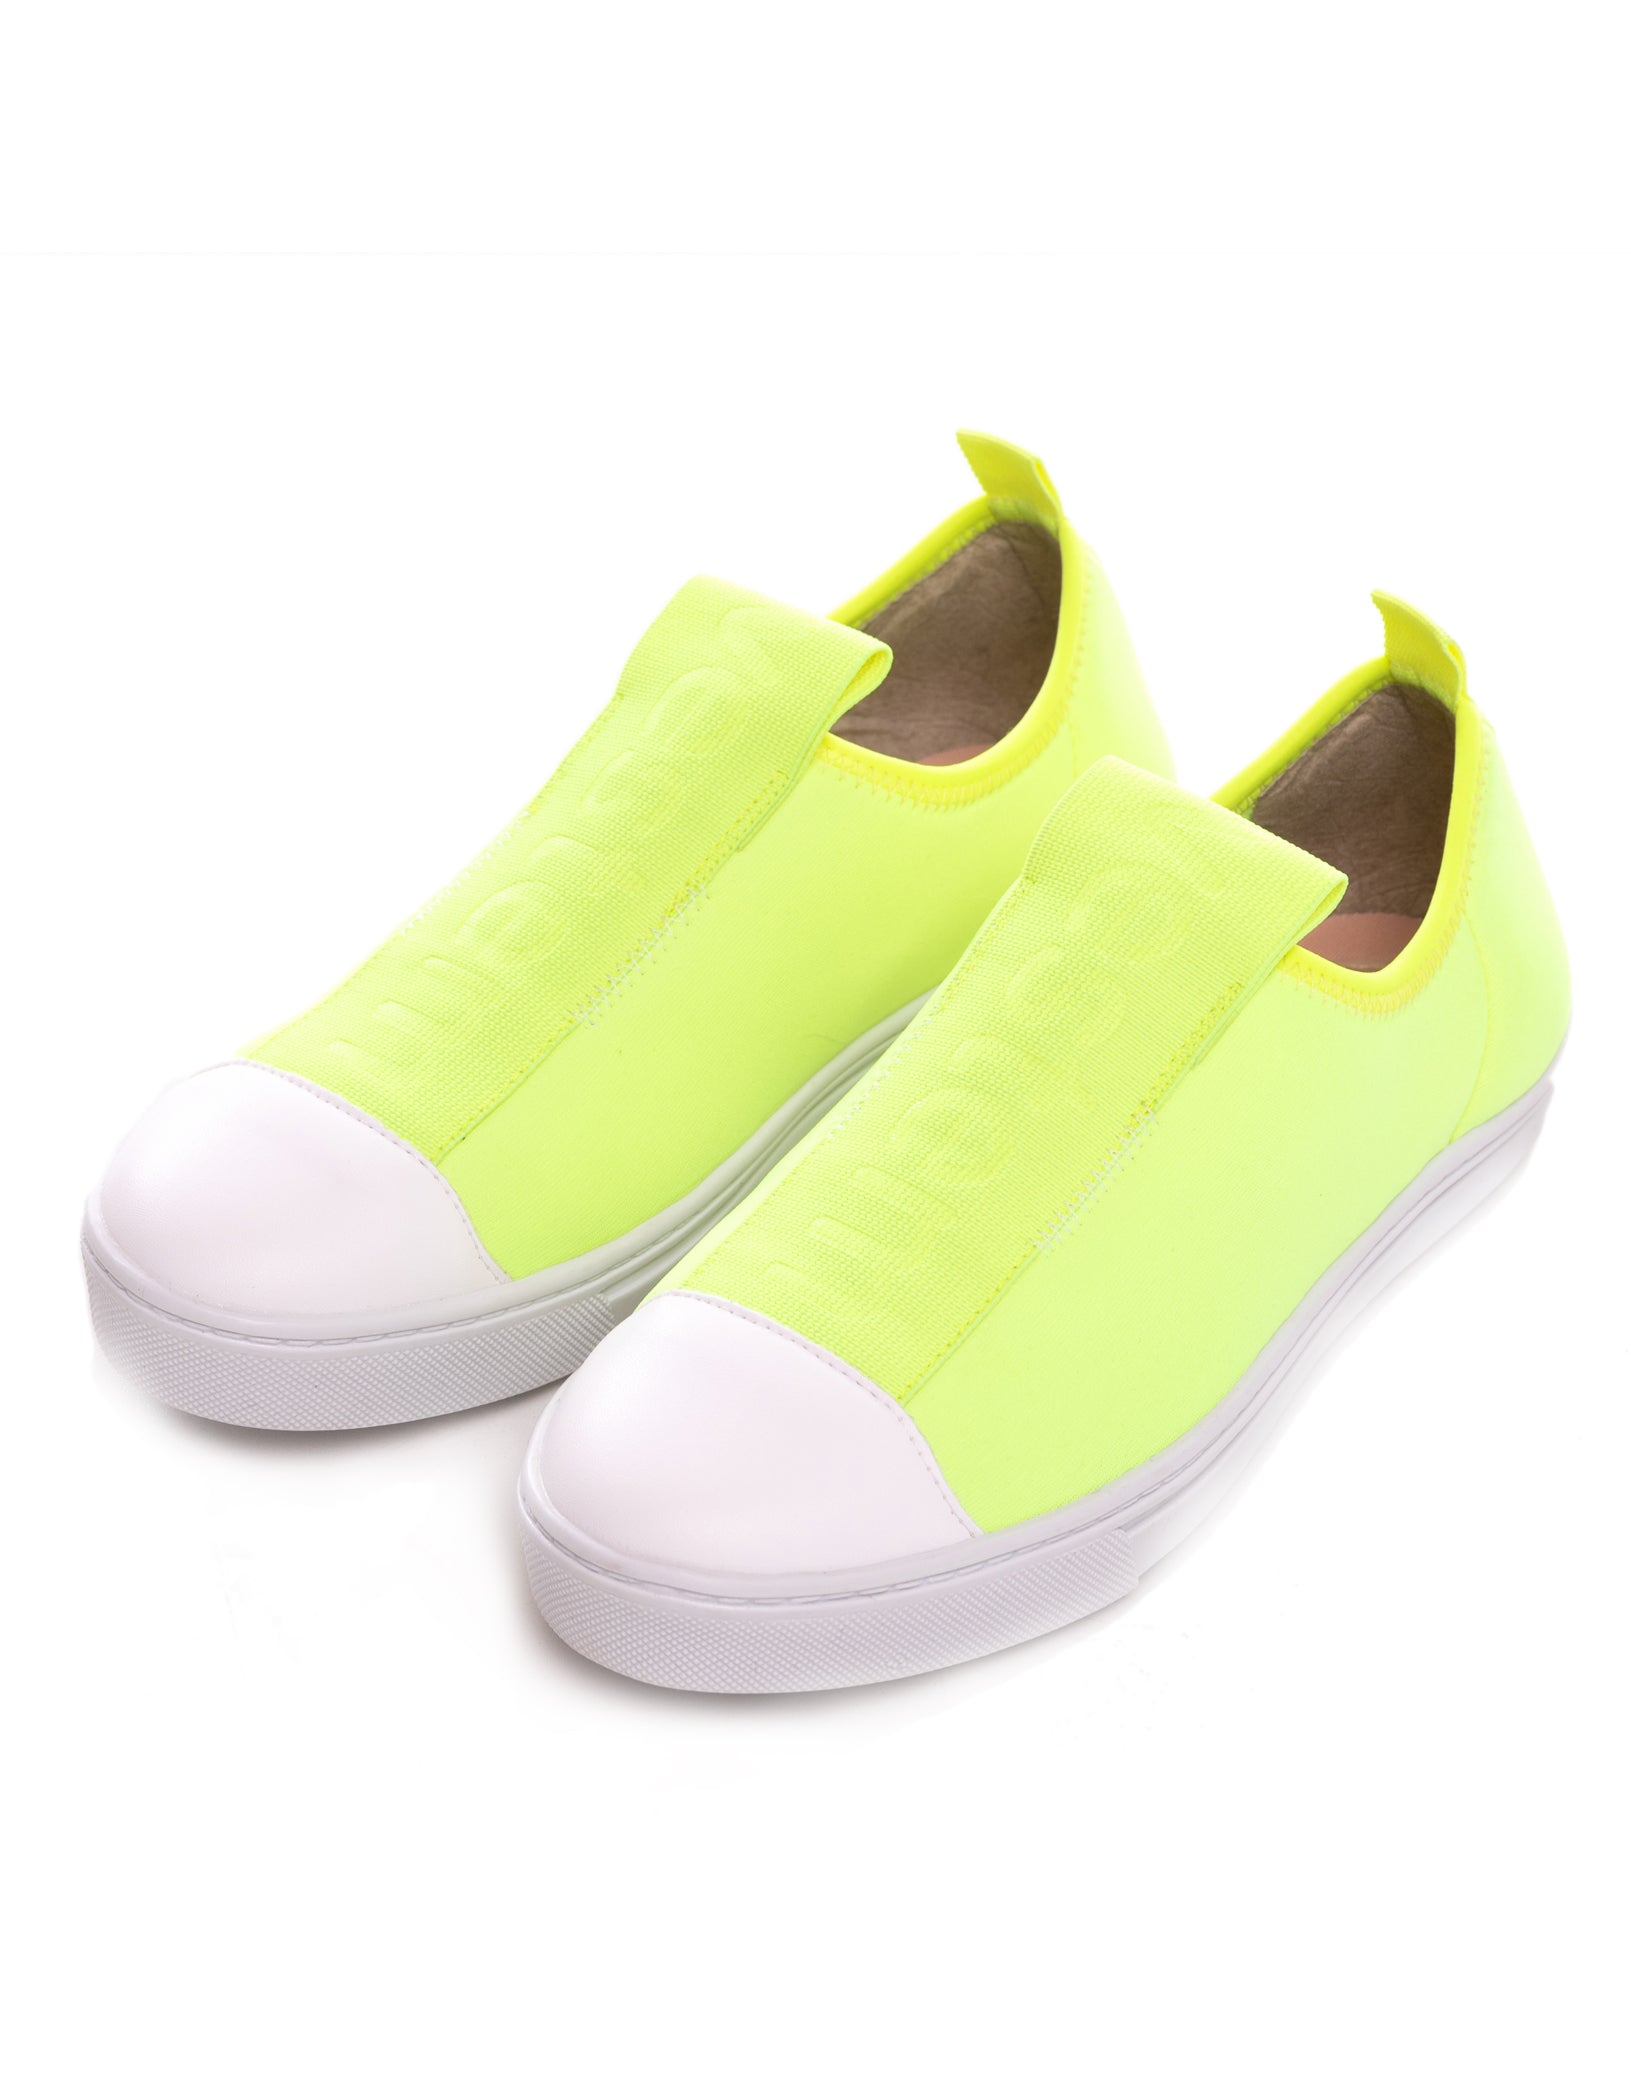 Vestem - Neon Yellow Portinari Tennis Shoes - TE19C0009